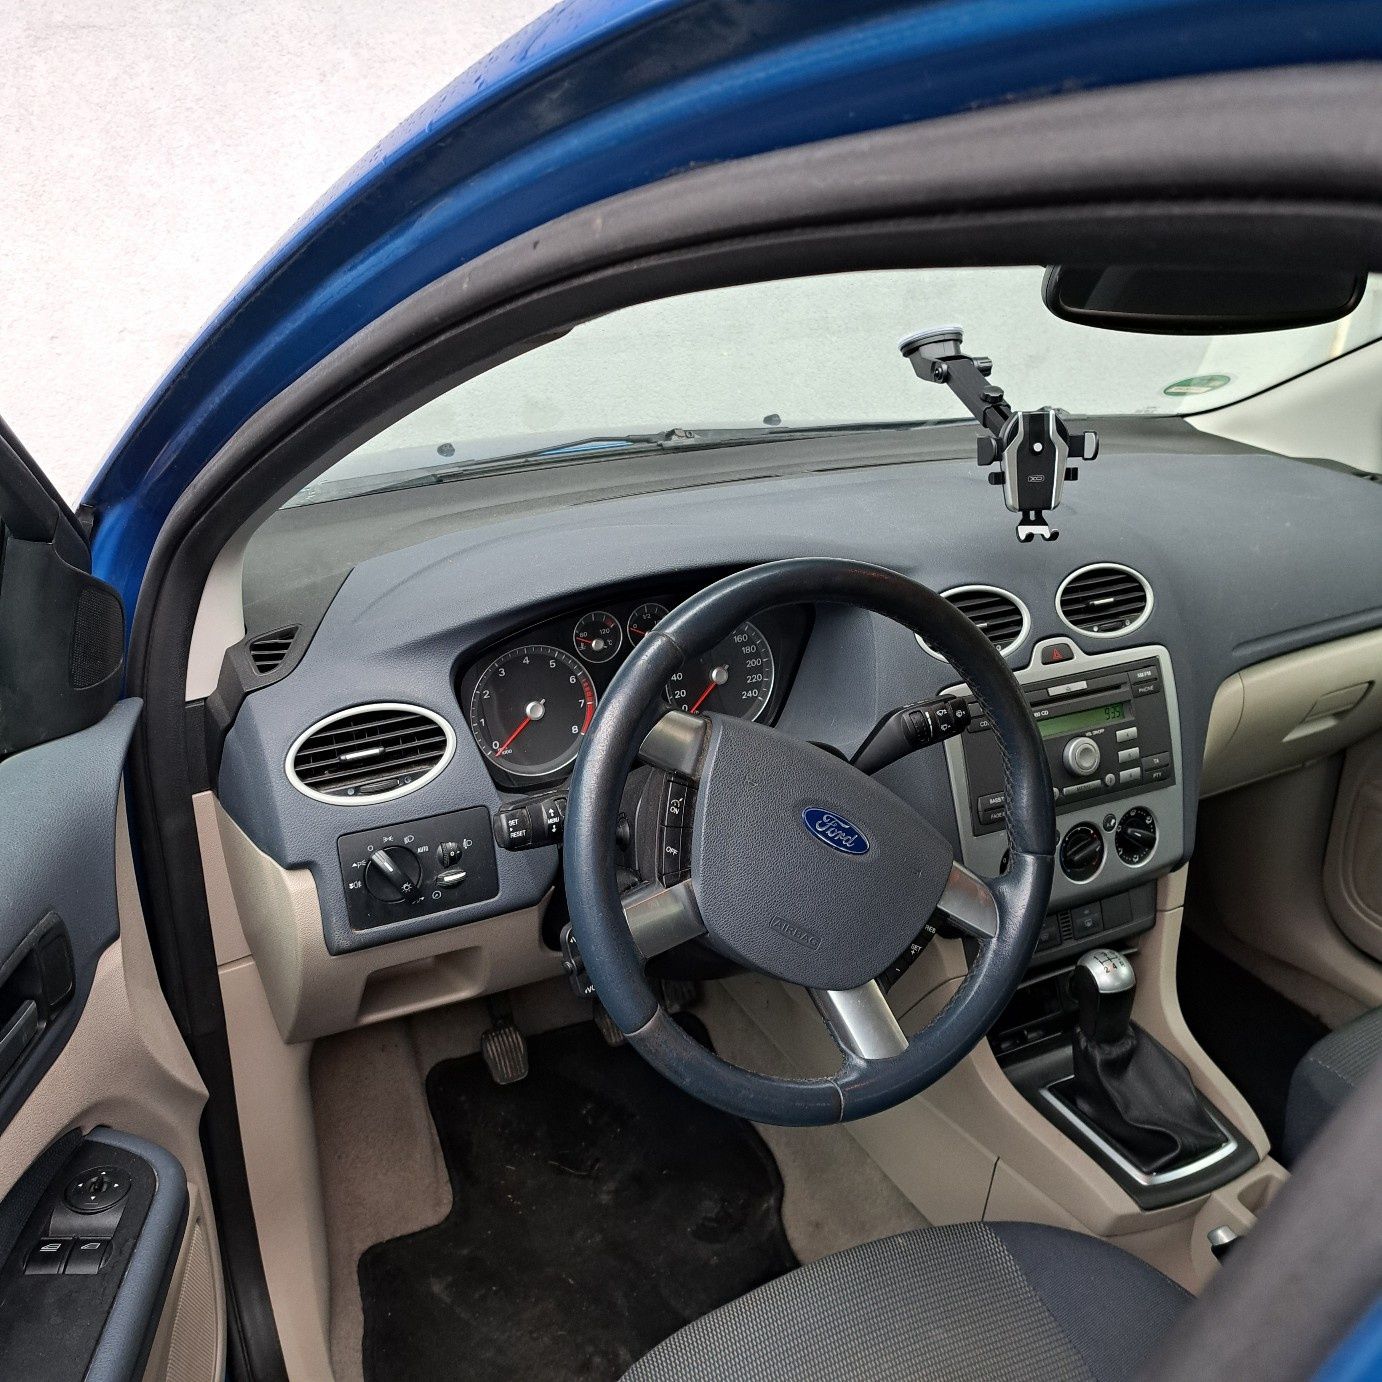 Ford Focus 1.6 Benzyna Gotowy do jazdy!